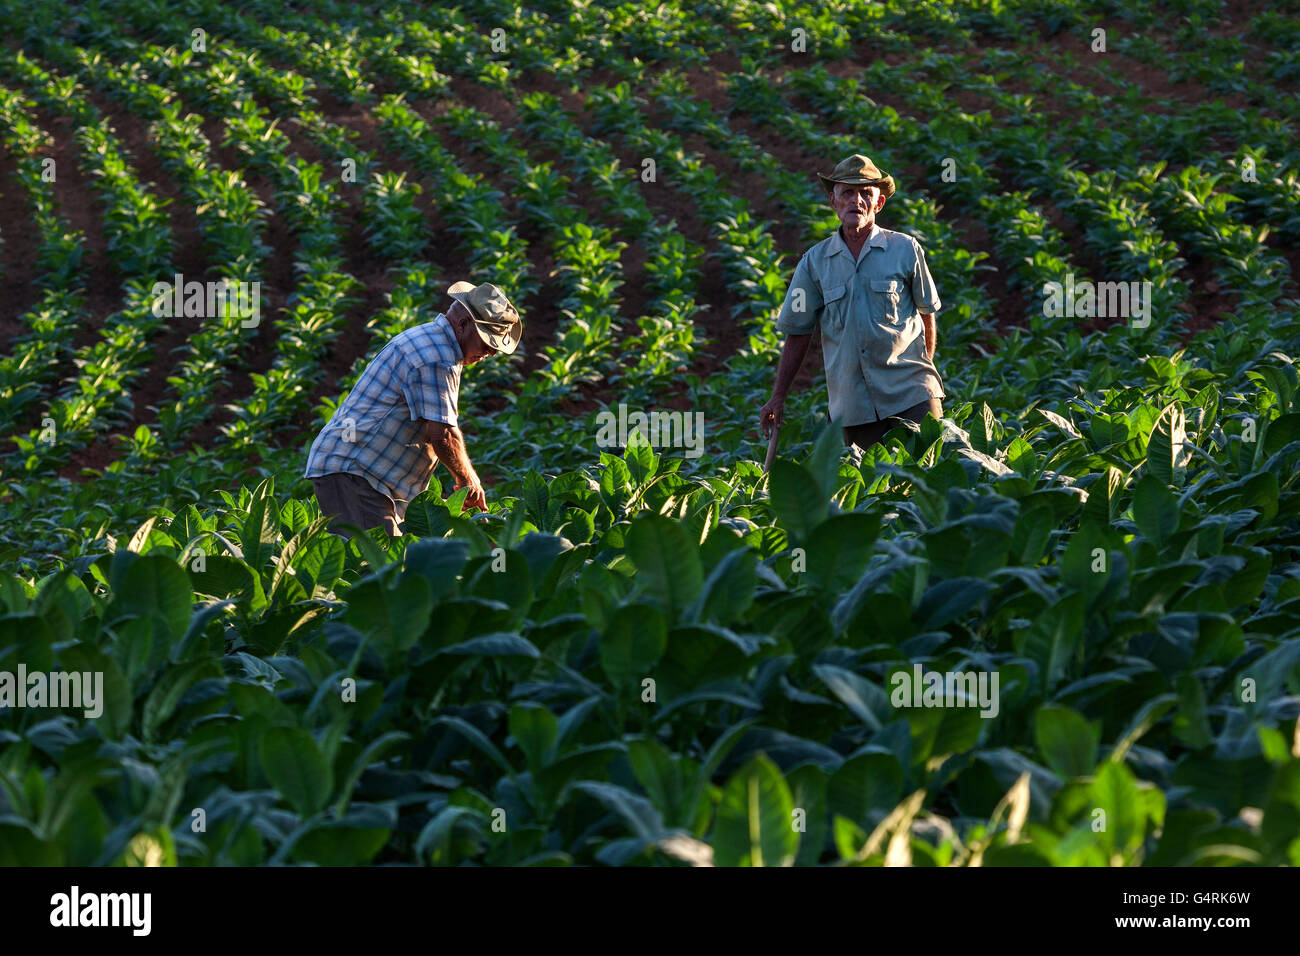 Tabakanbau, Tabakbauern arbeiten im Bereich Tabak, in der Nähe von Vinales, Vinales Tal, Provinz Pinar Del Rio, Kuba Stockfoto